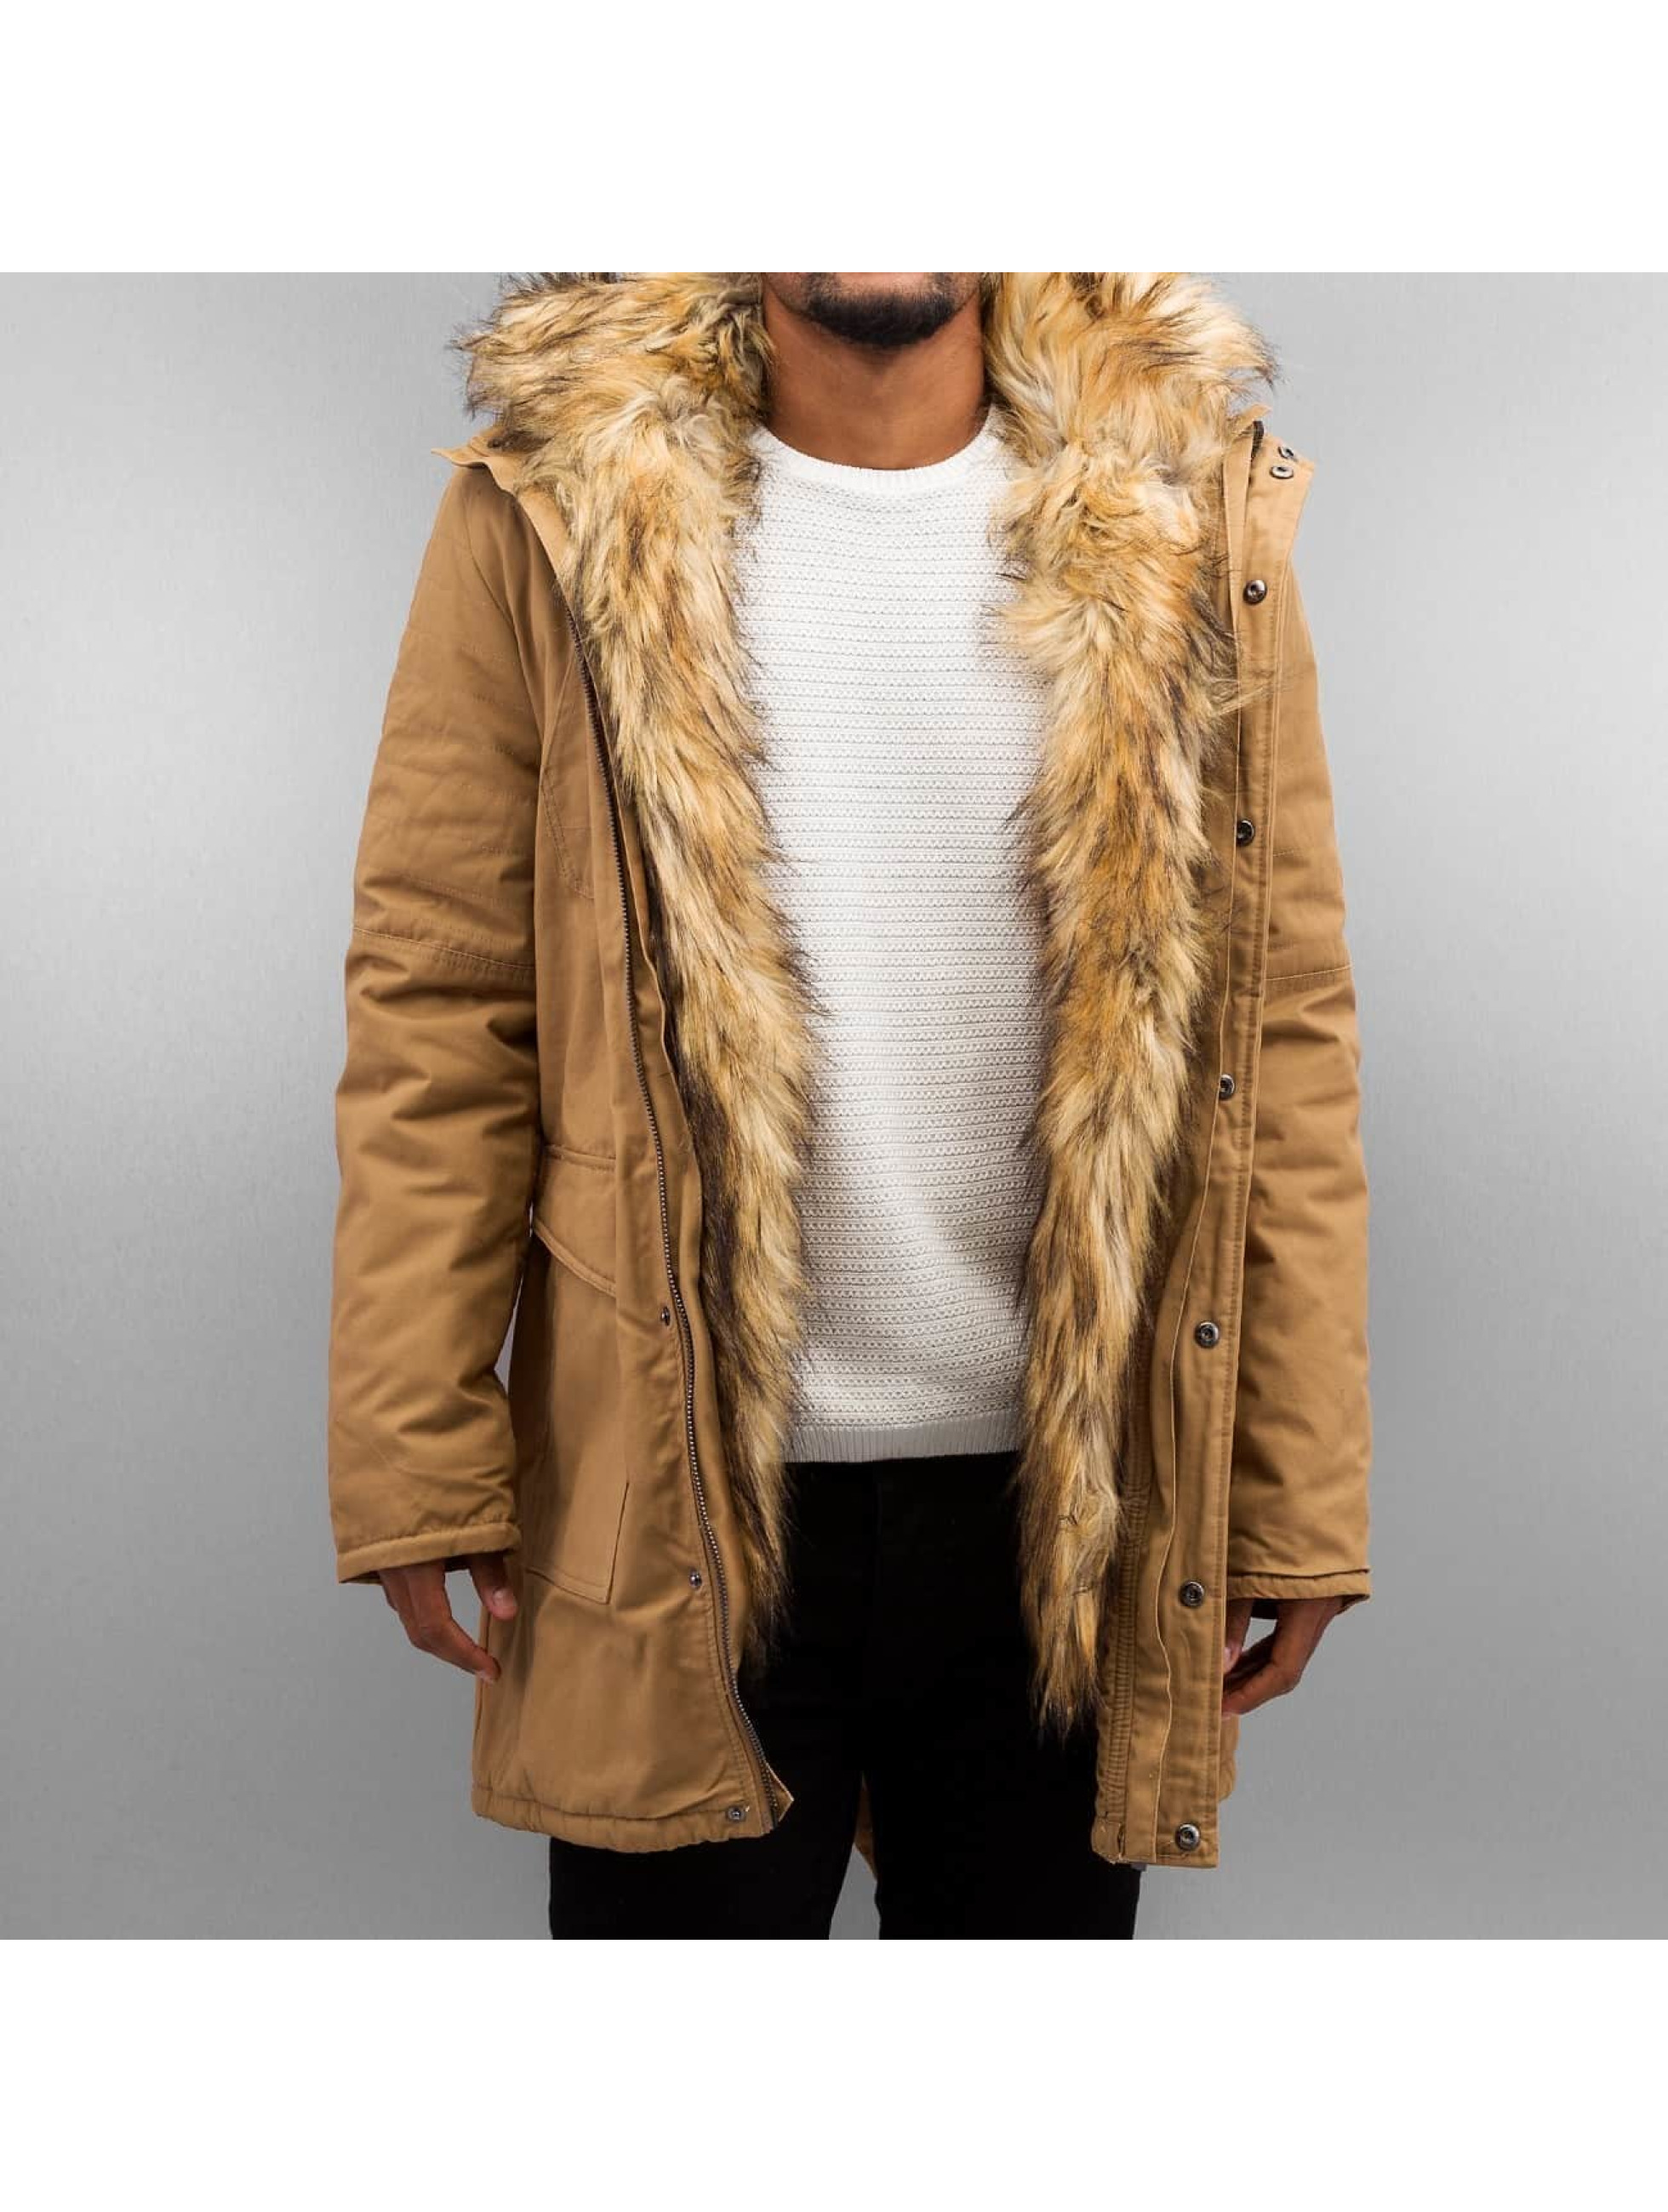 Mantel Fake Fur in braun